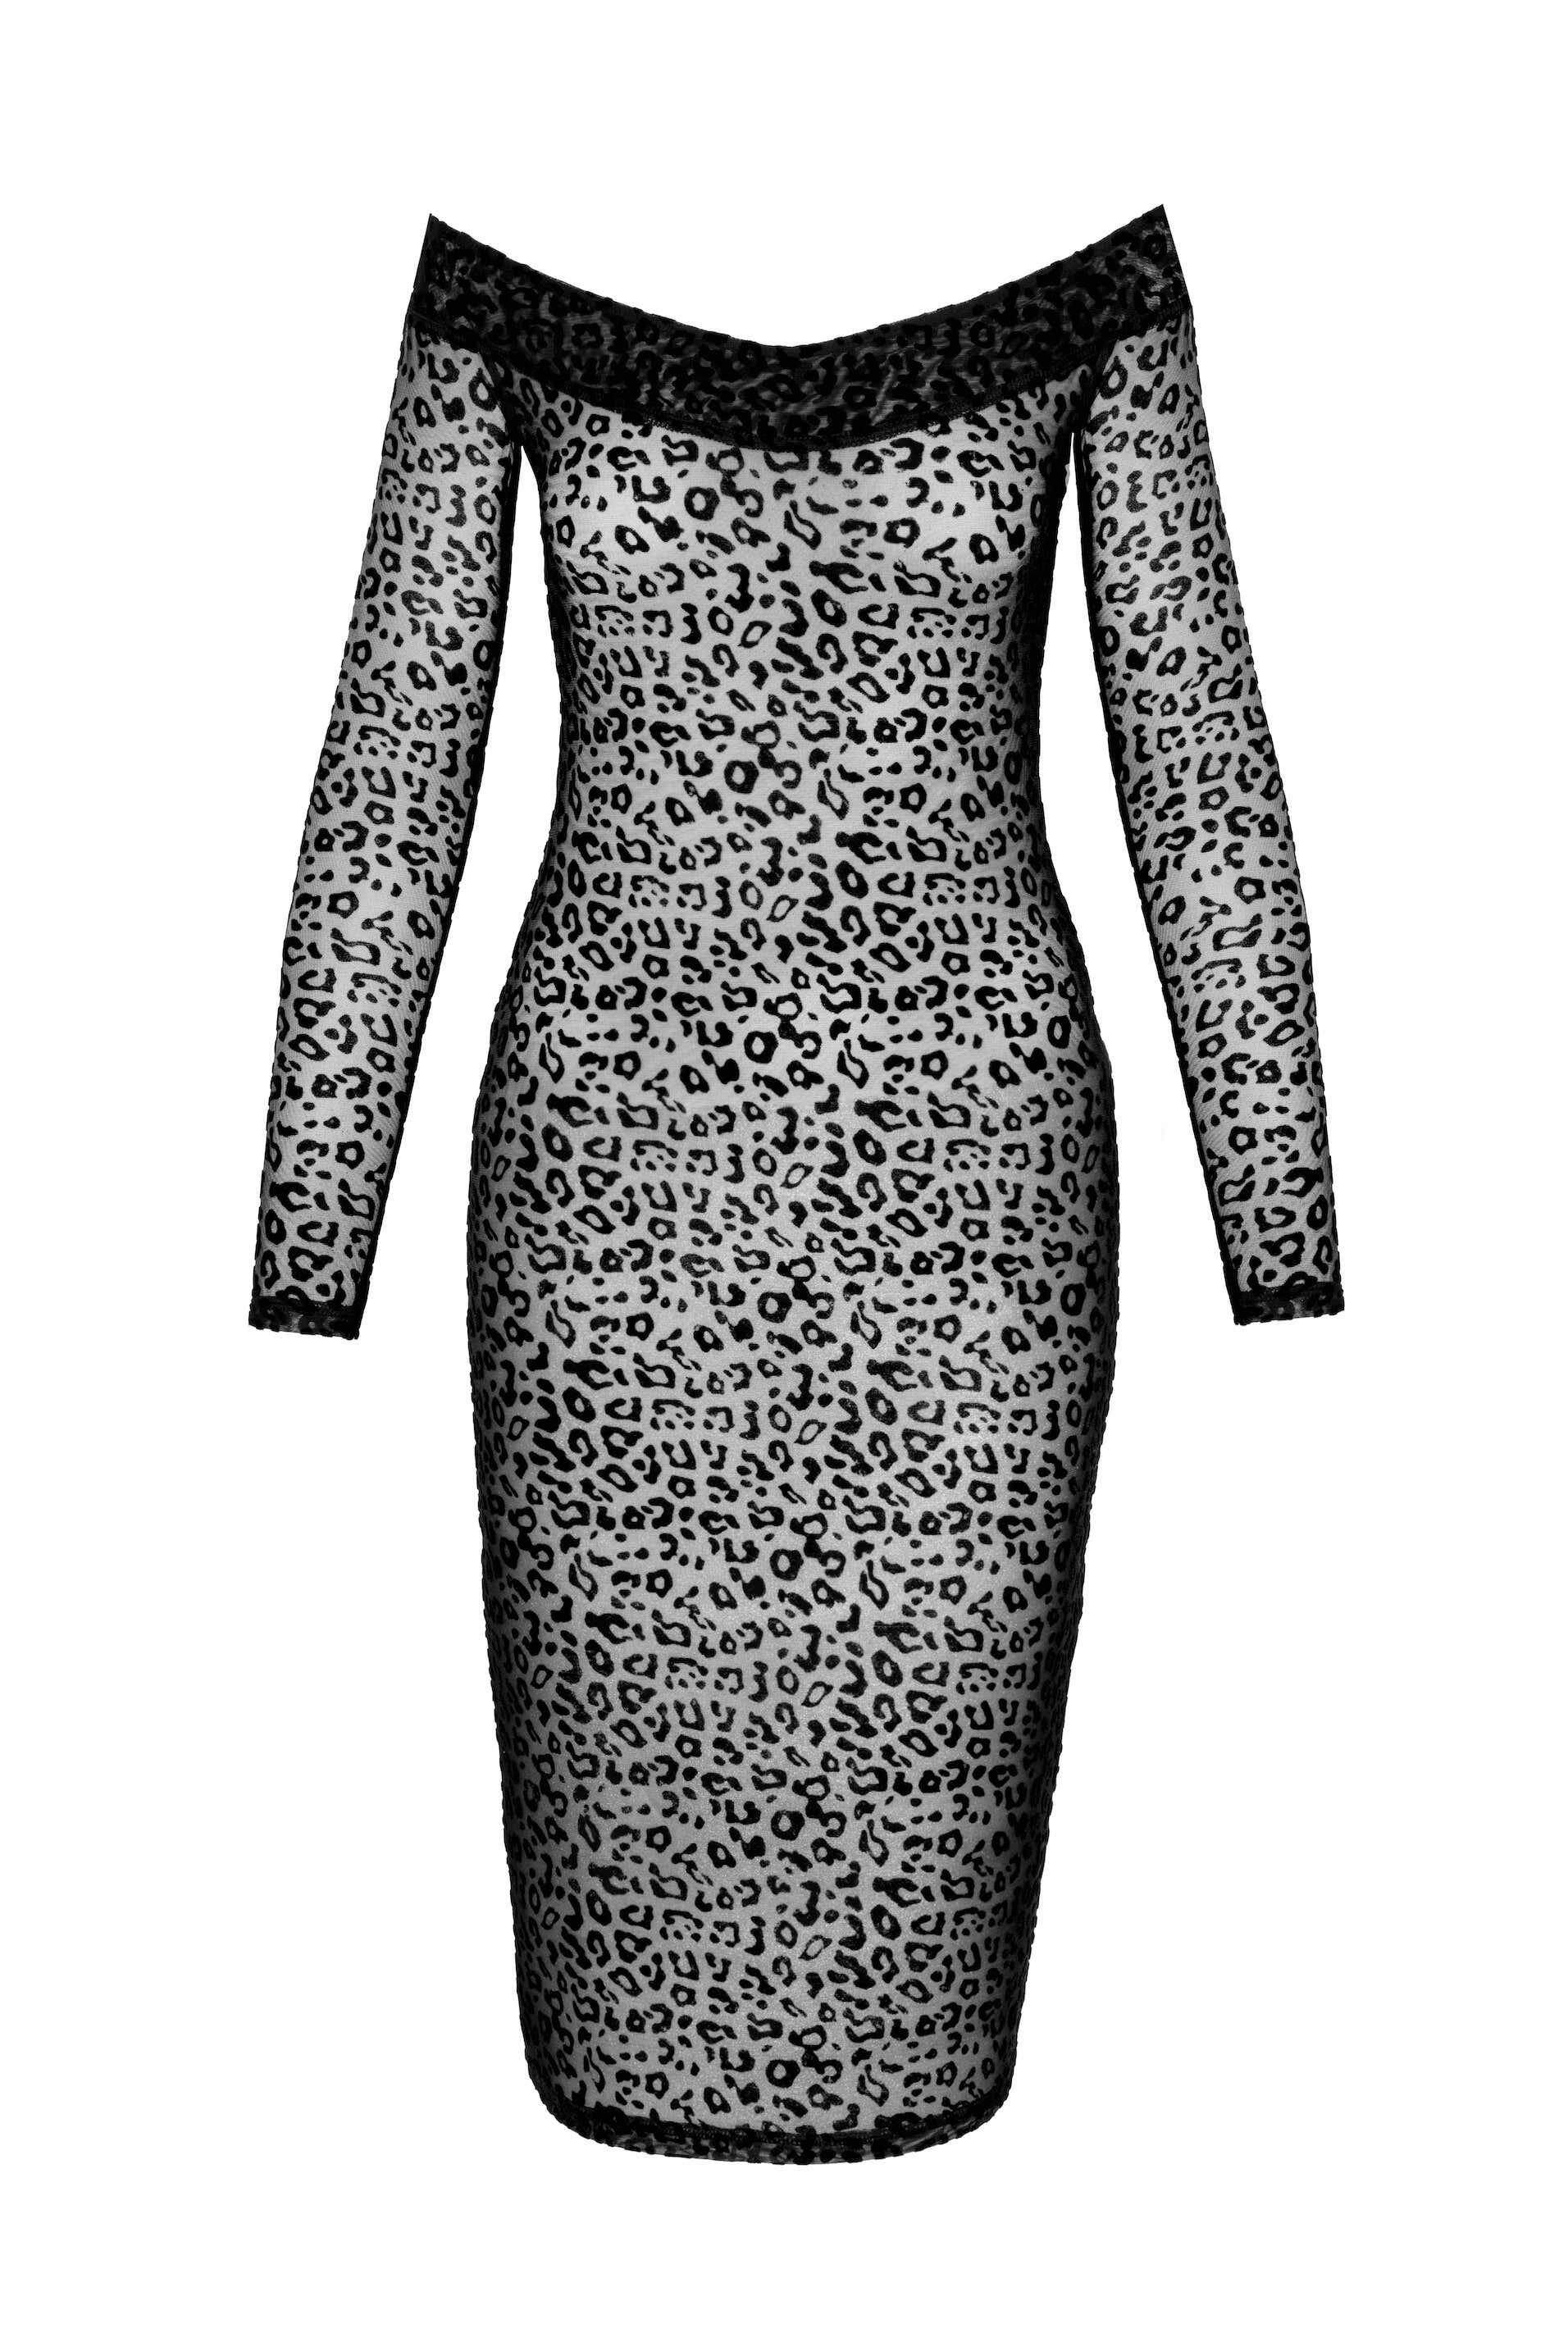 Leopard Print Flocked Midi Dress front detail